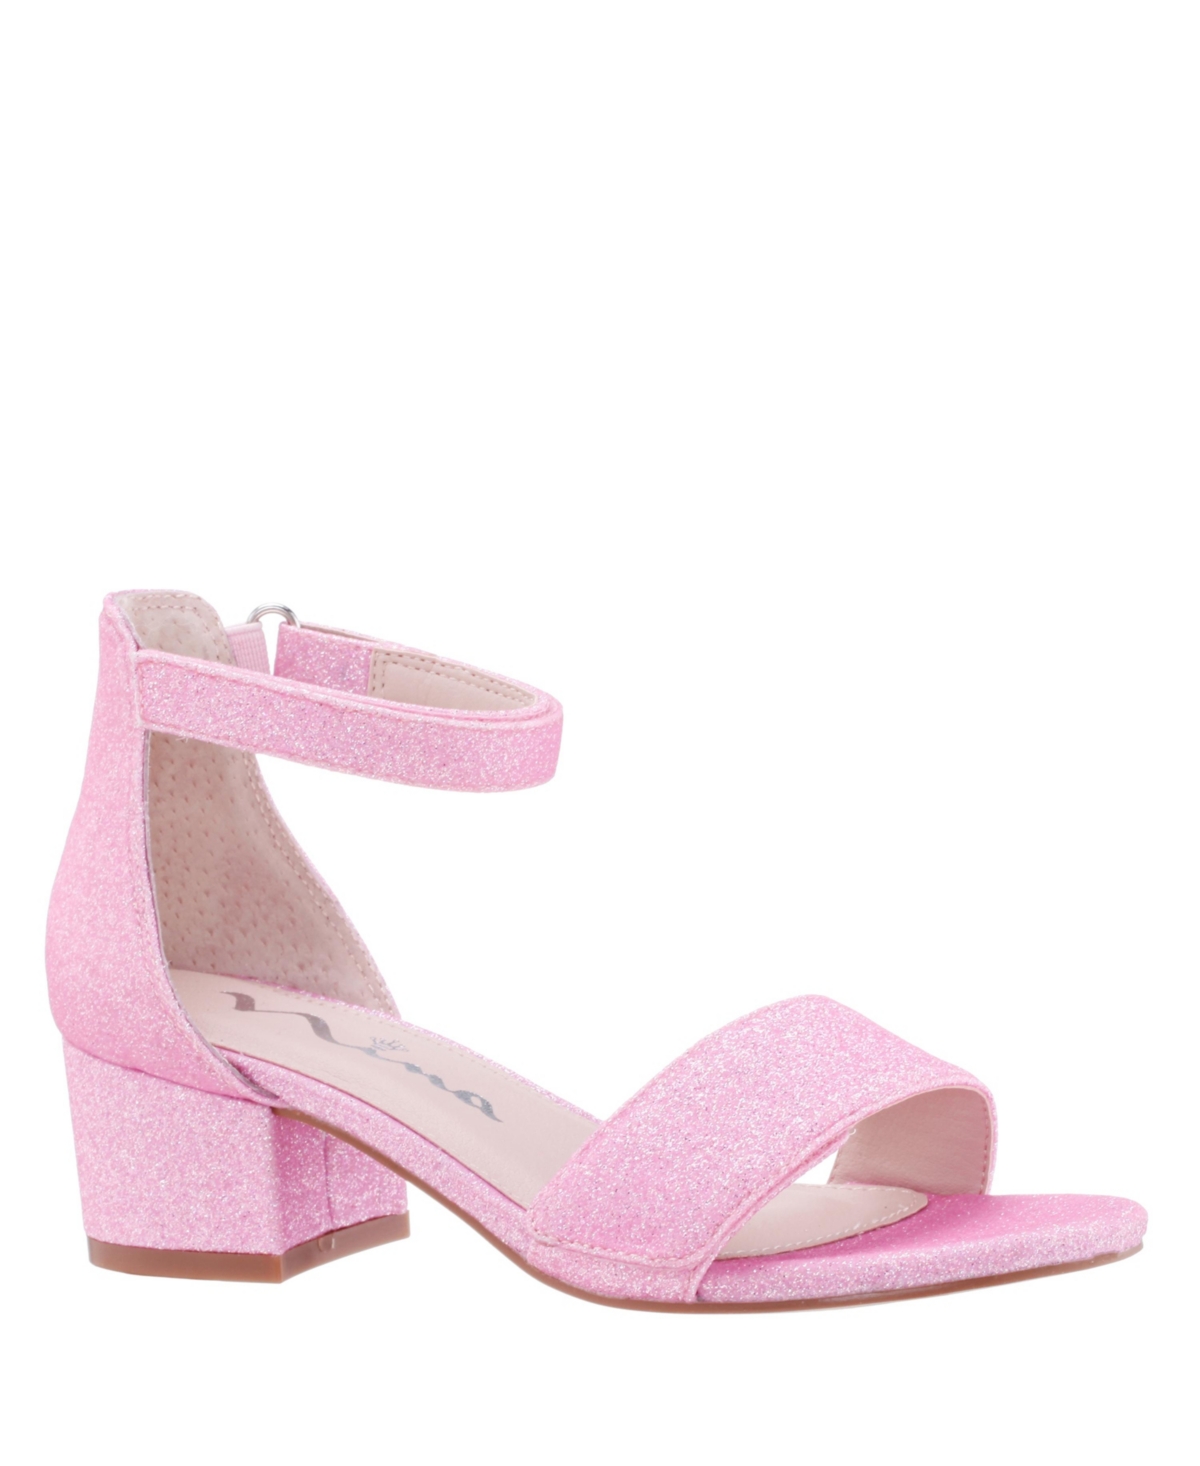 Nina Toddler Girls Rejina-t Ankle Fastening Strap Sandals In Light Pink Glitter